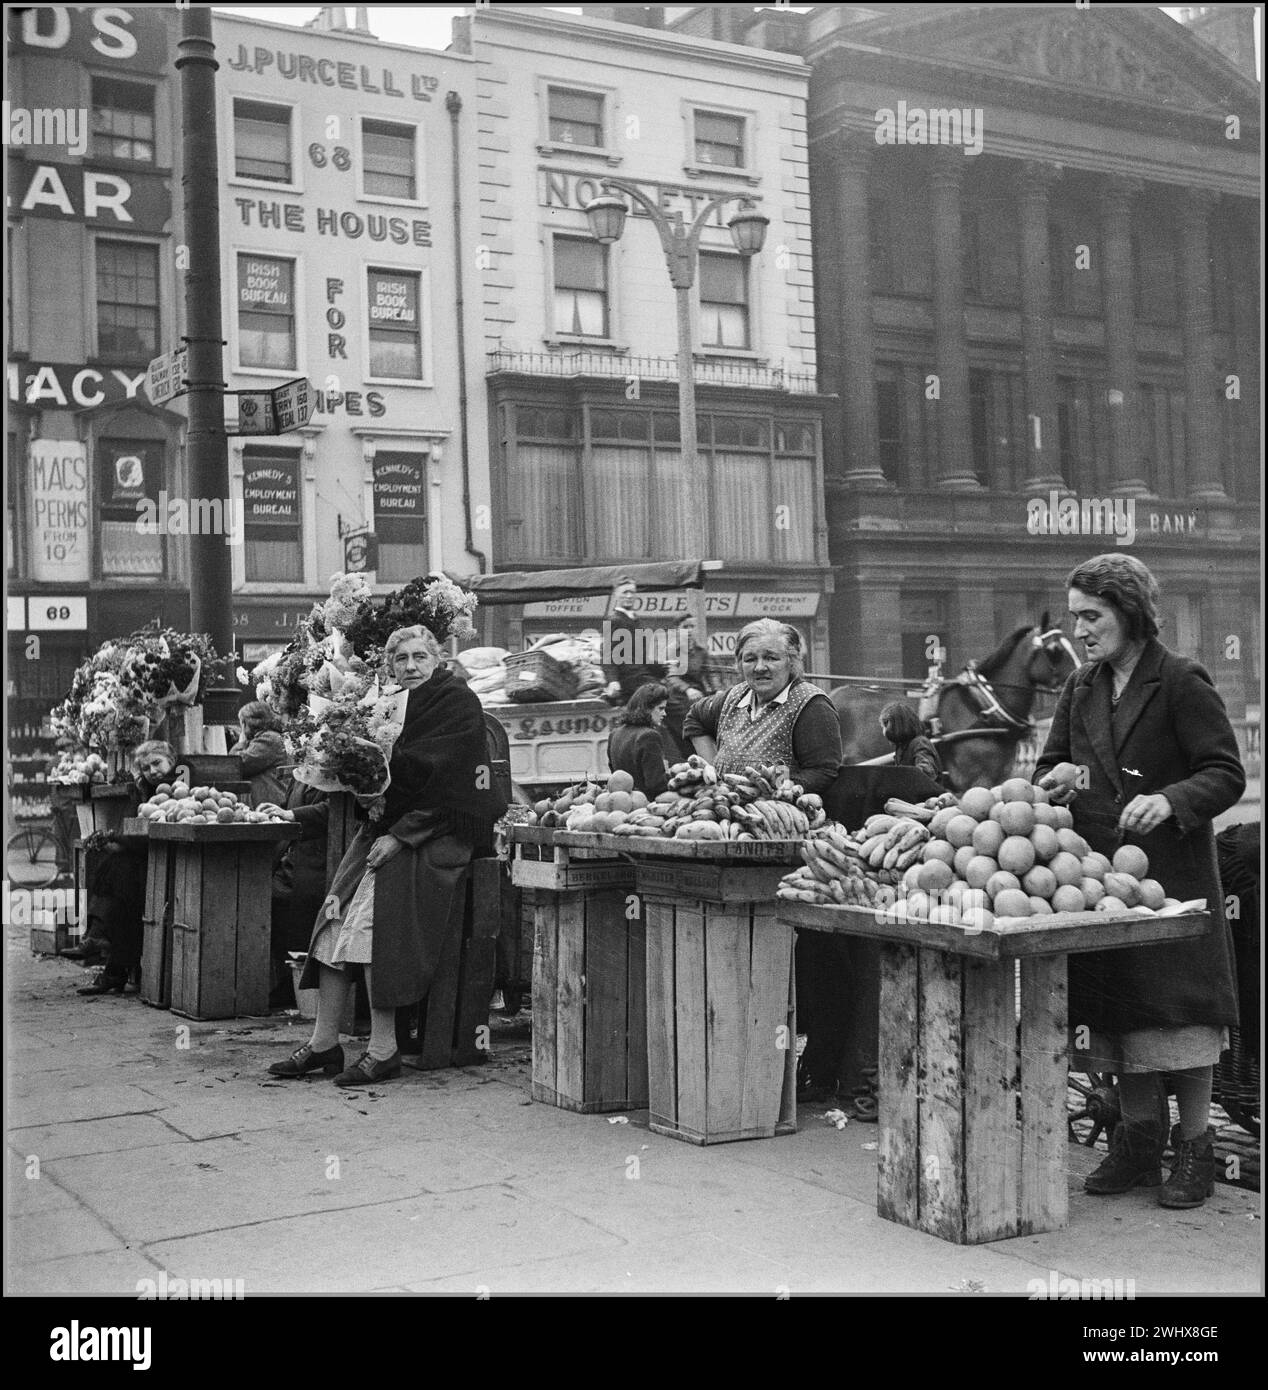 1946 WW2 Food Flowers Market DUBLIN MARKET STRASSENVERKÄUFER Obst- und Blumenverkäufer vor dem Hauptpostamt, an der Nelson's Pillar in der O'Connell Street Post war 1946 Dublin Irland Stockfoto